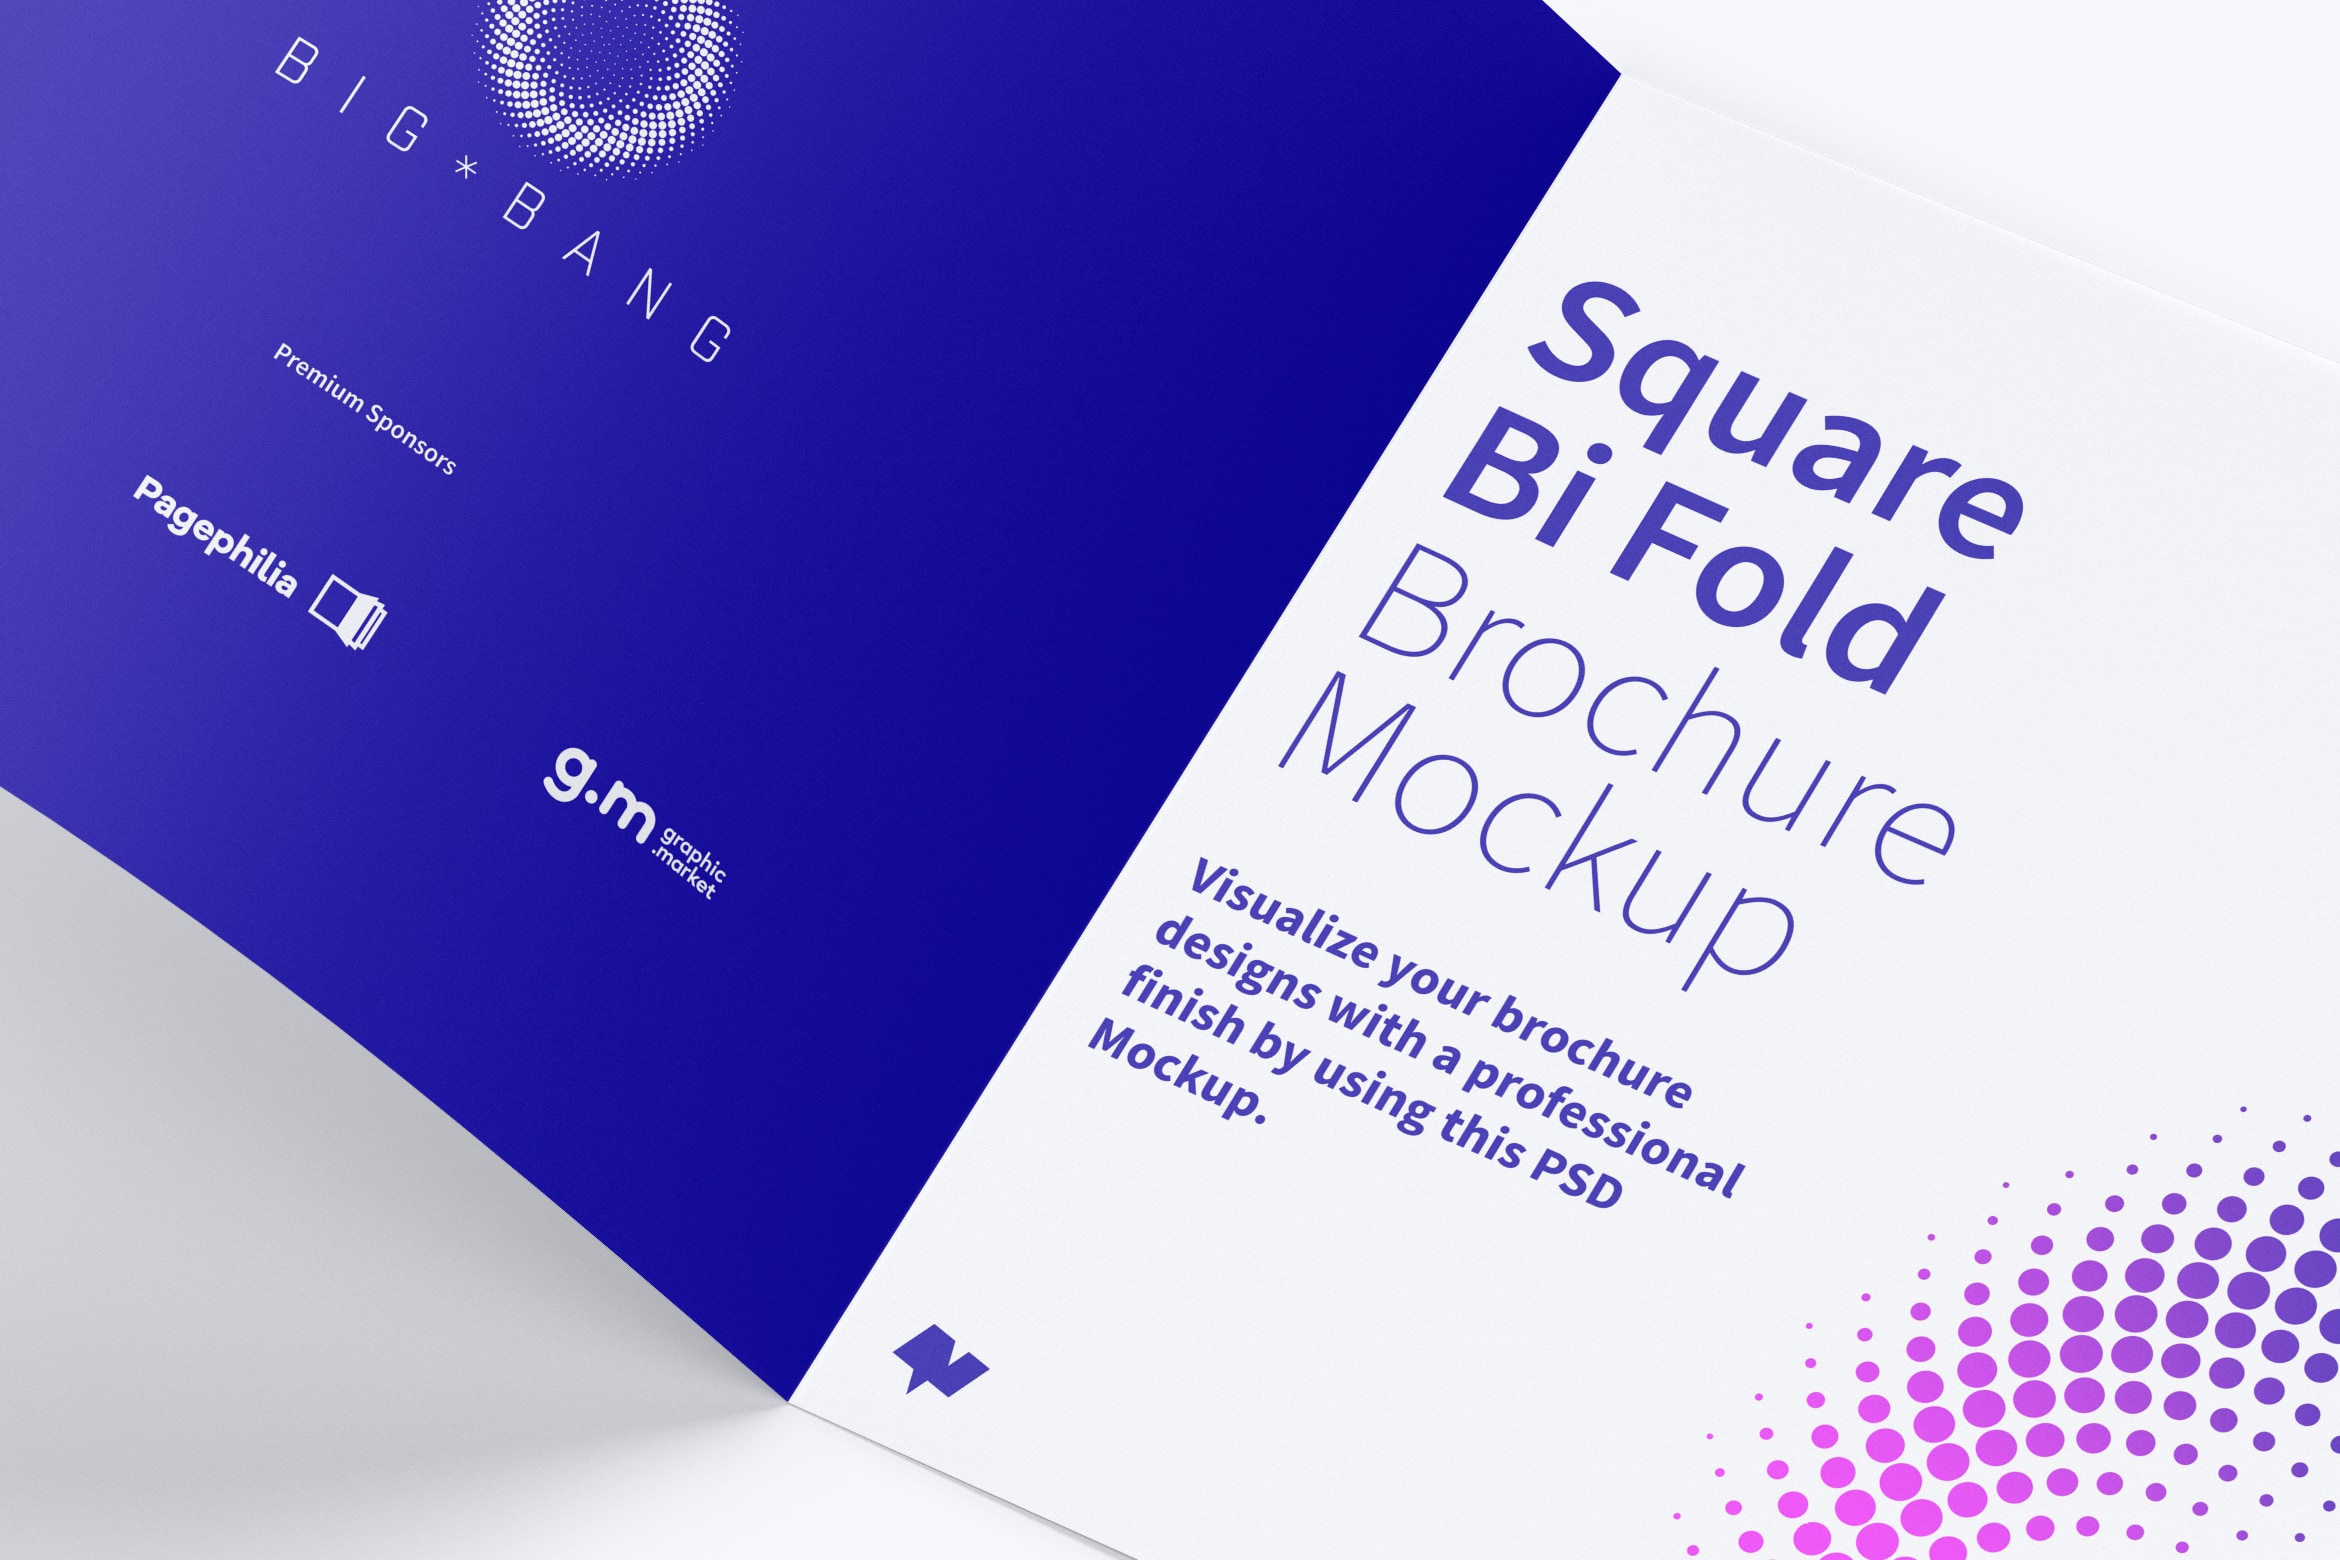 方形对折页传单/小册子设计效果预览样机02 Square Bi Fold Brochure Mockup 02插图(3)